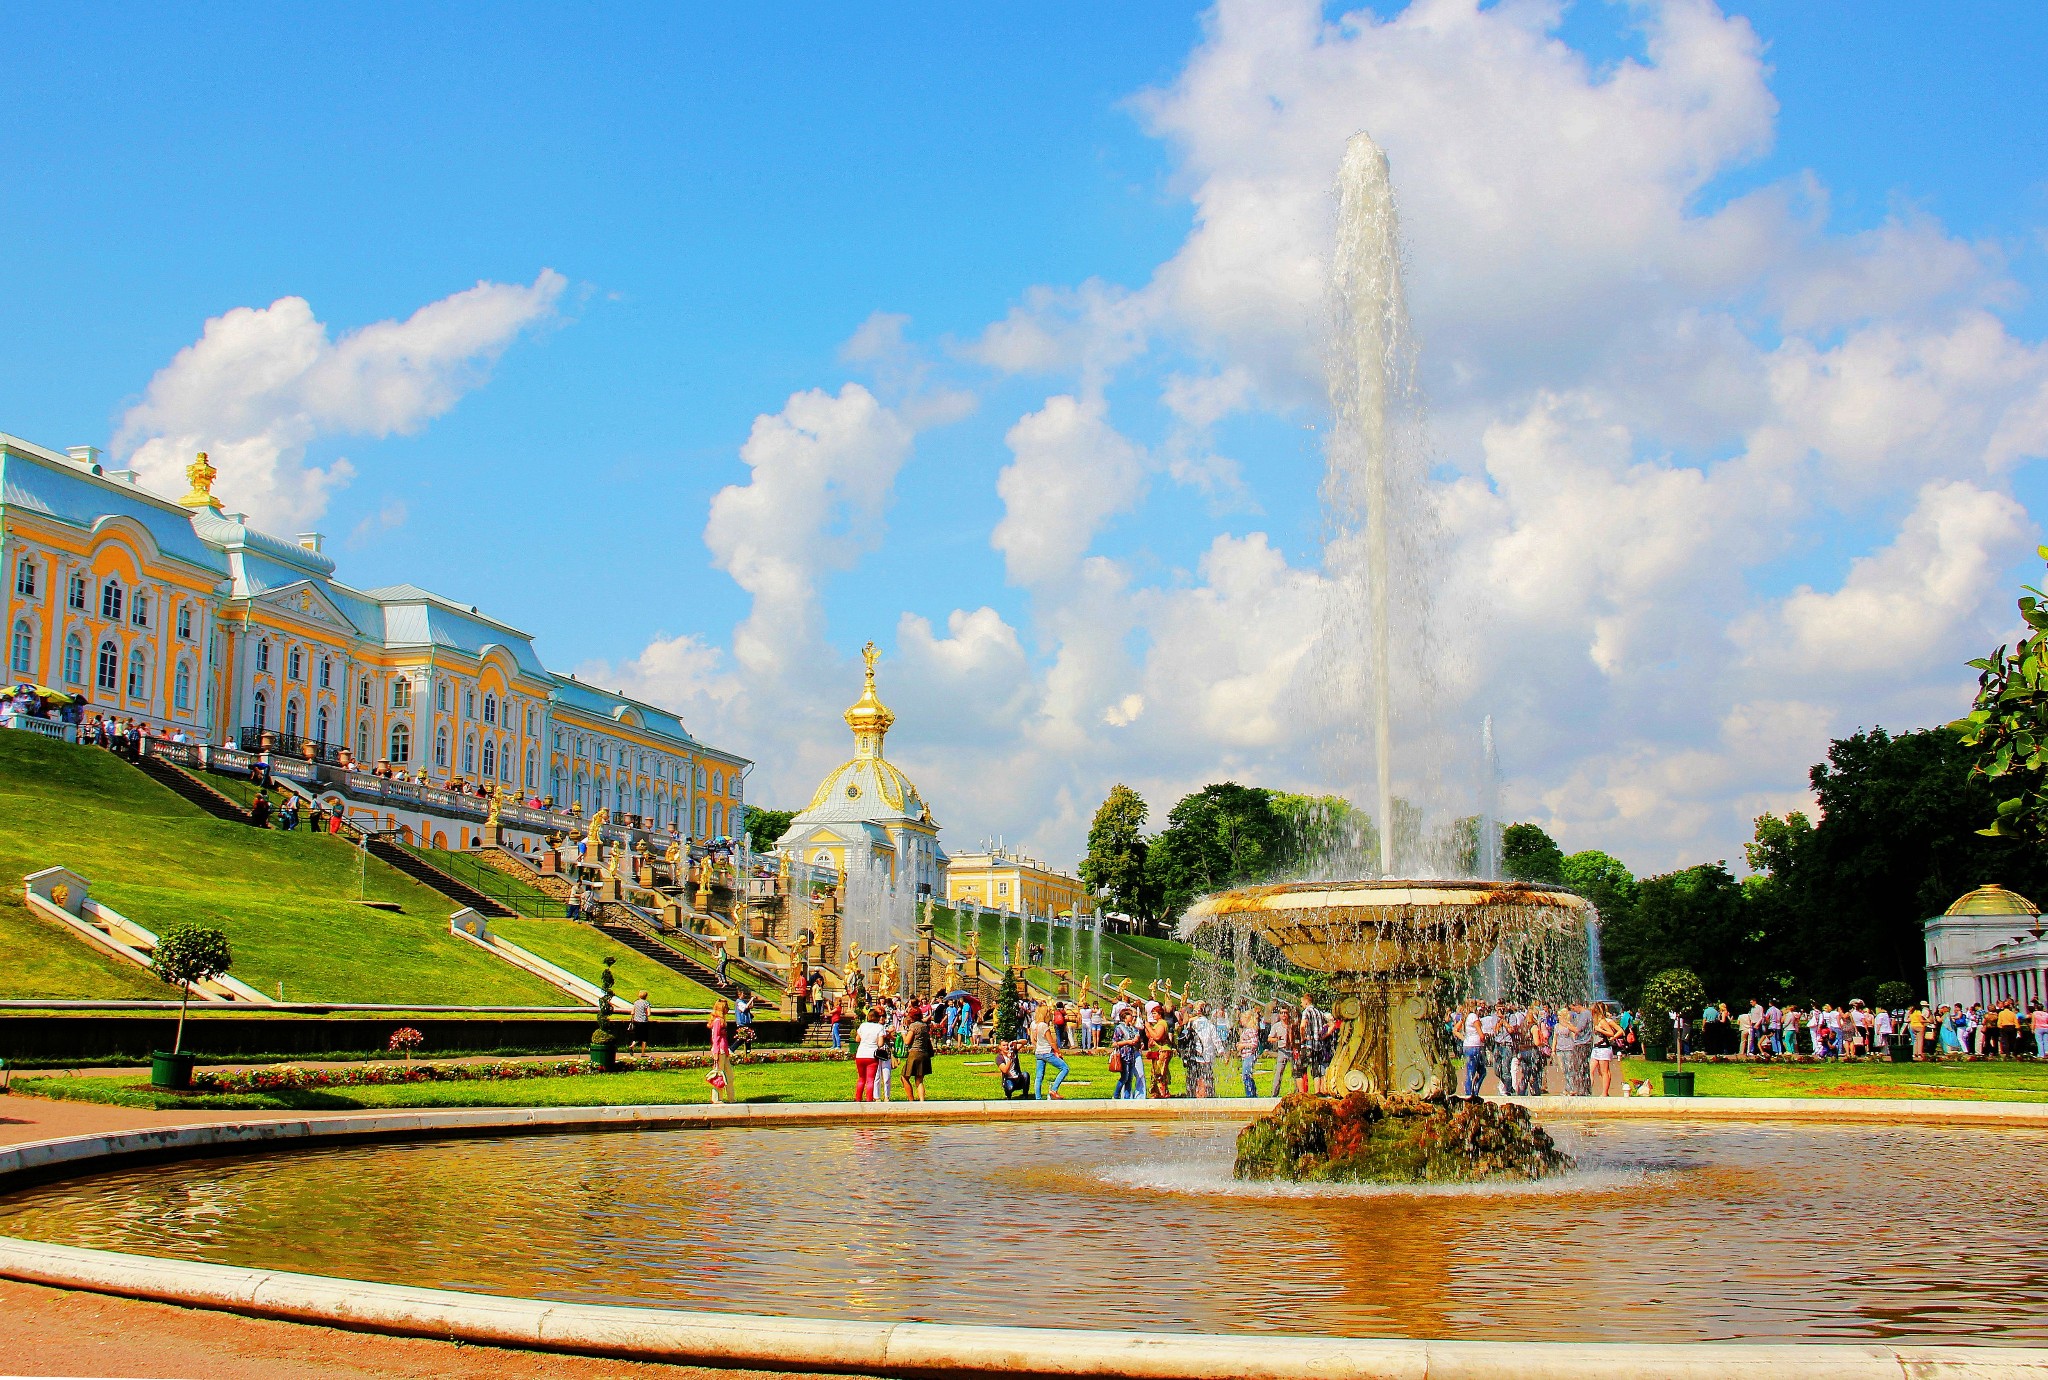 圣彼得堡旅游图片,圣彼得堡自助游图片,圣彼得堡旅游景点照片 